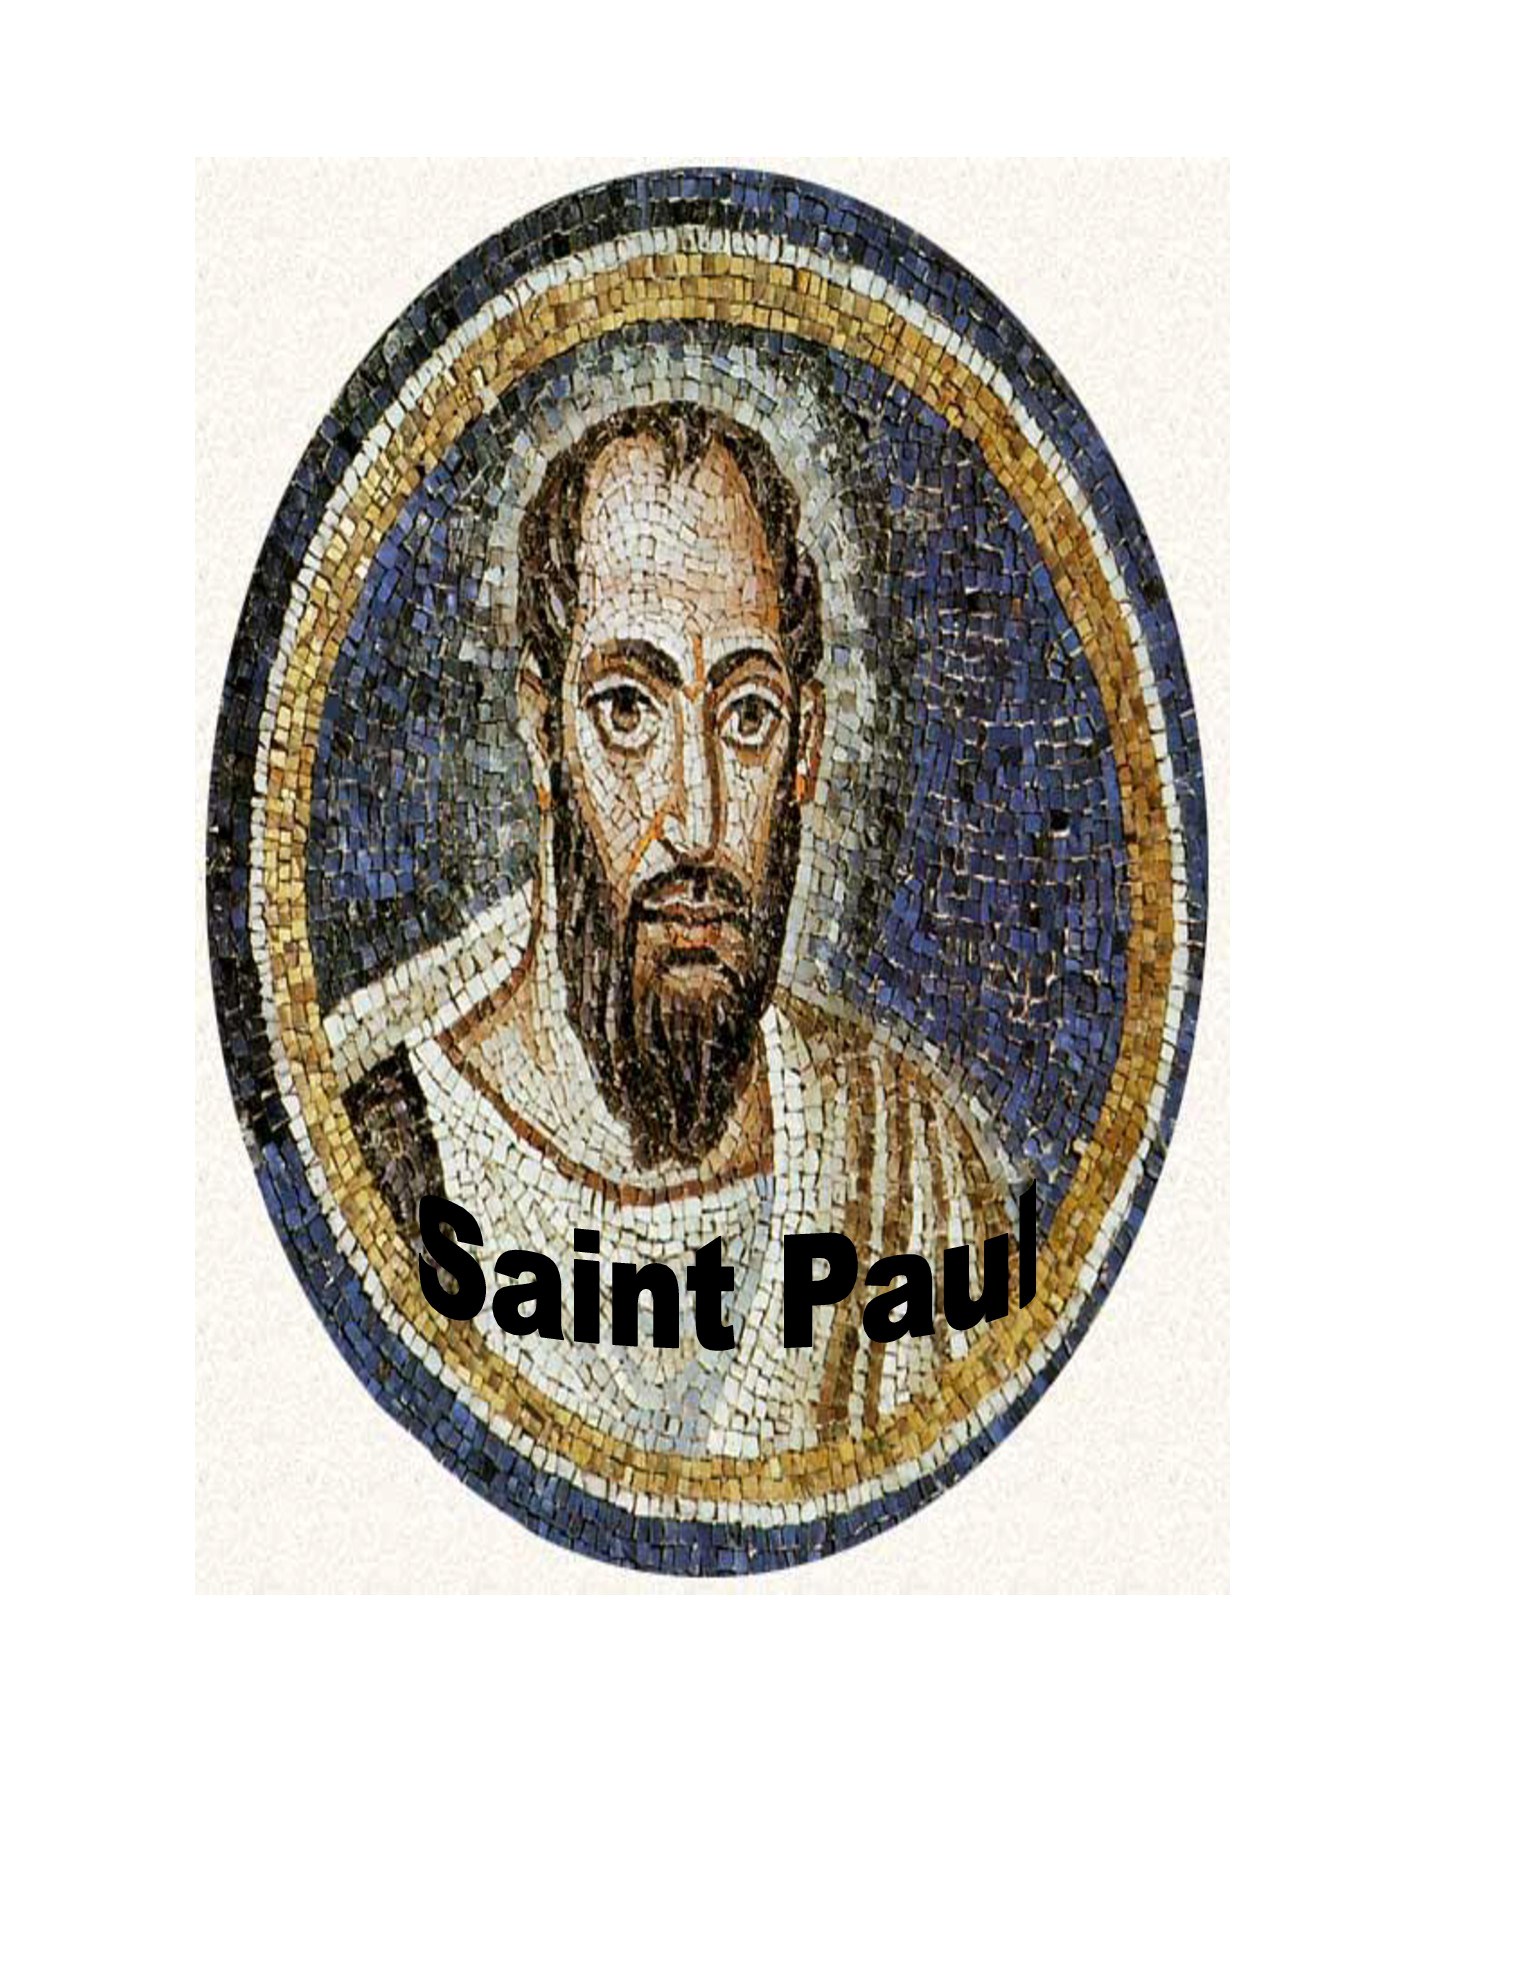 St Paul